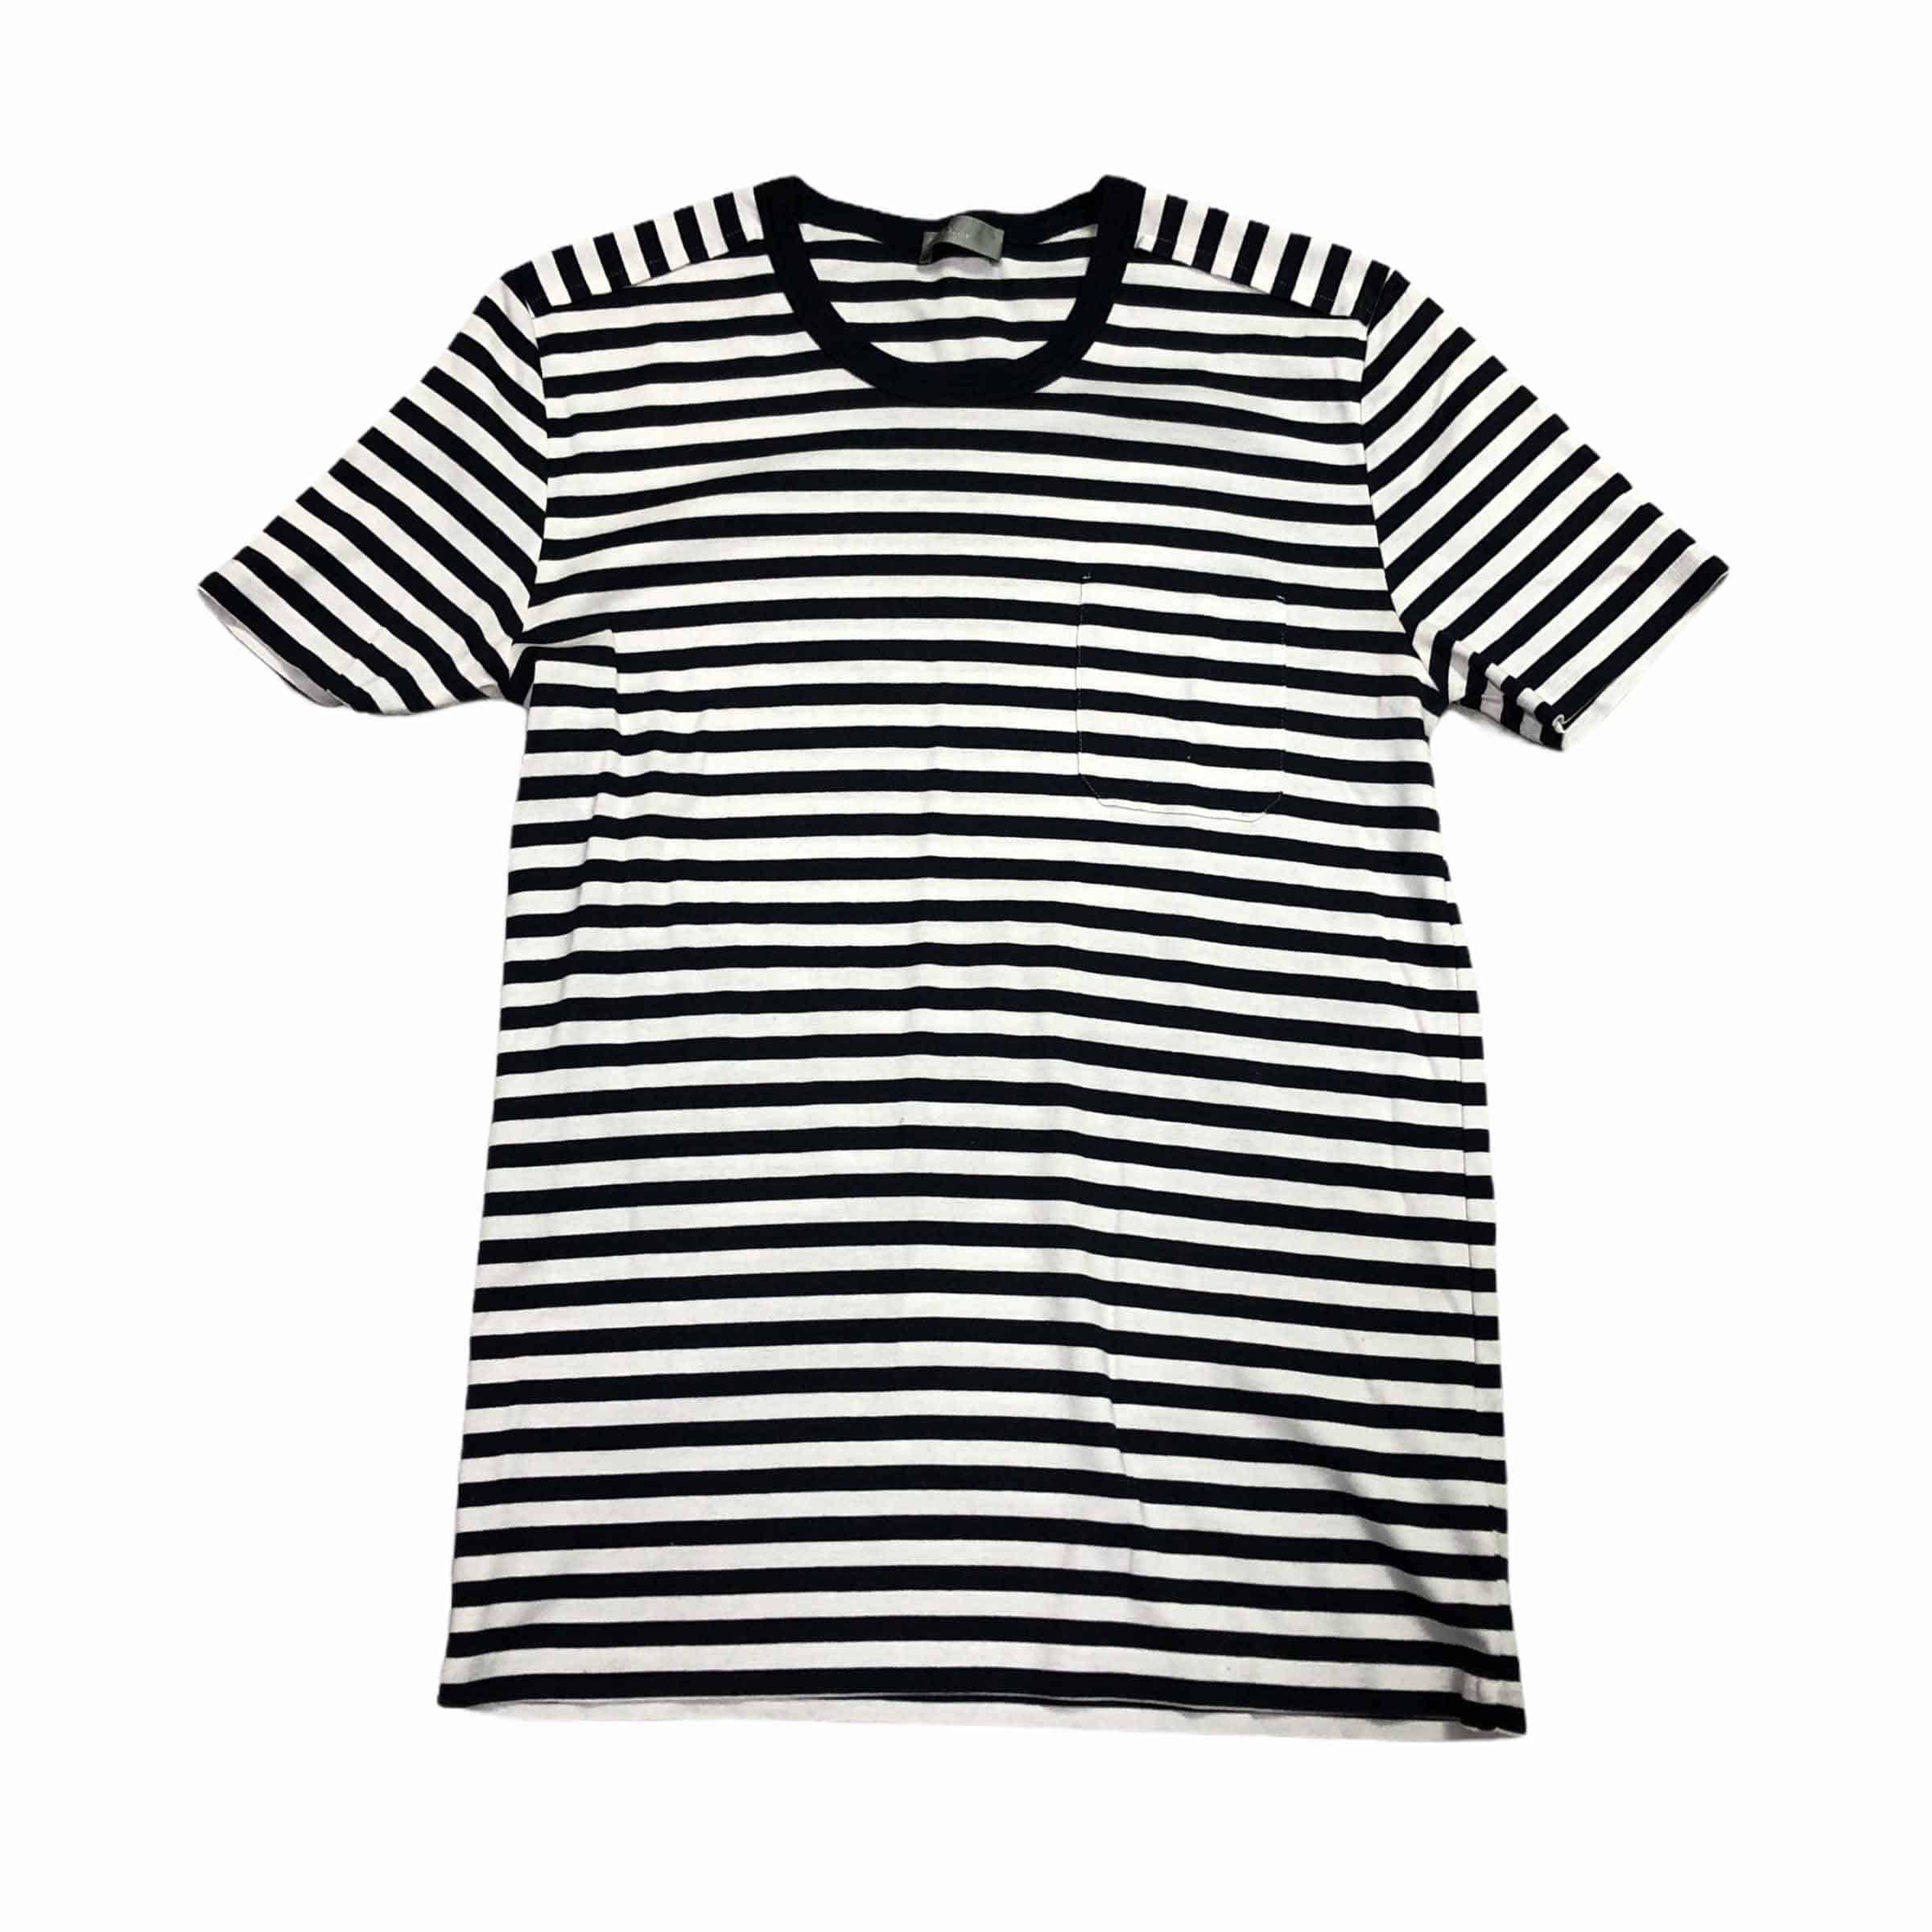 [Dior] Dior Homme Stripe Tshirt - Size S